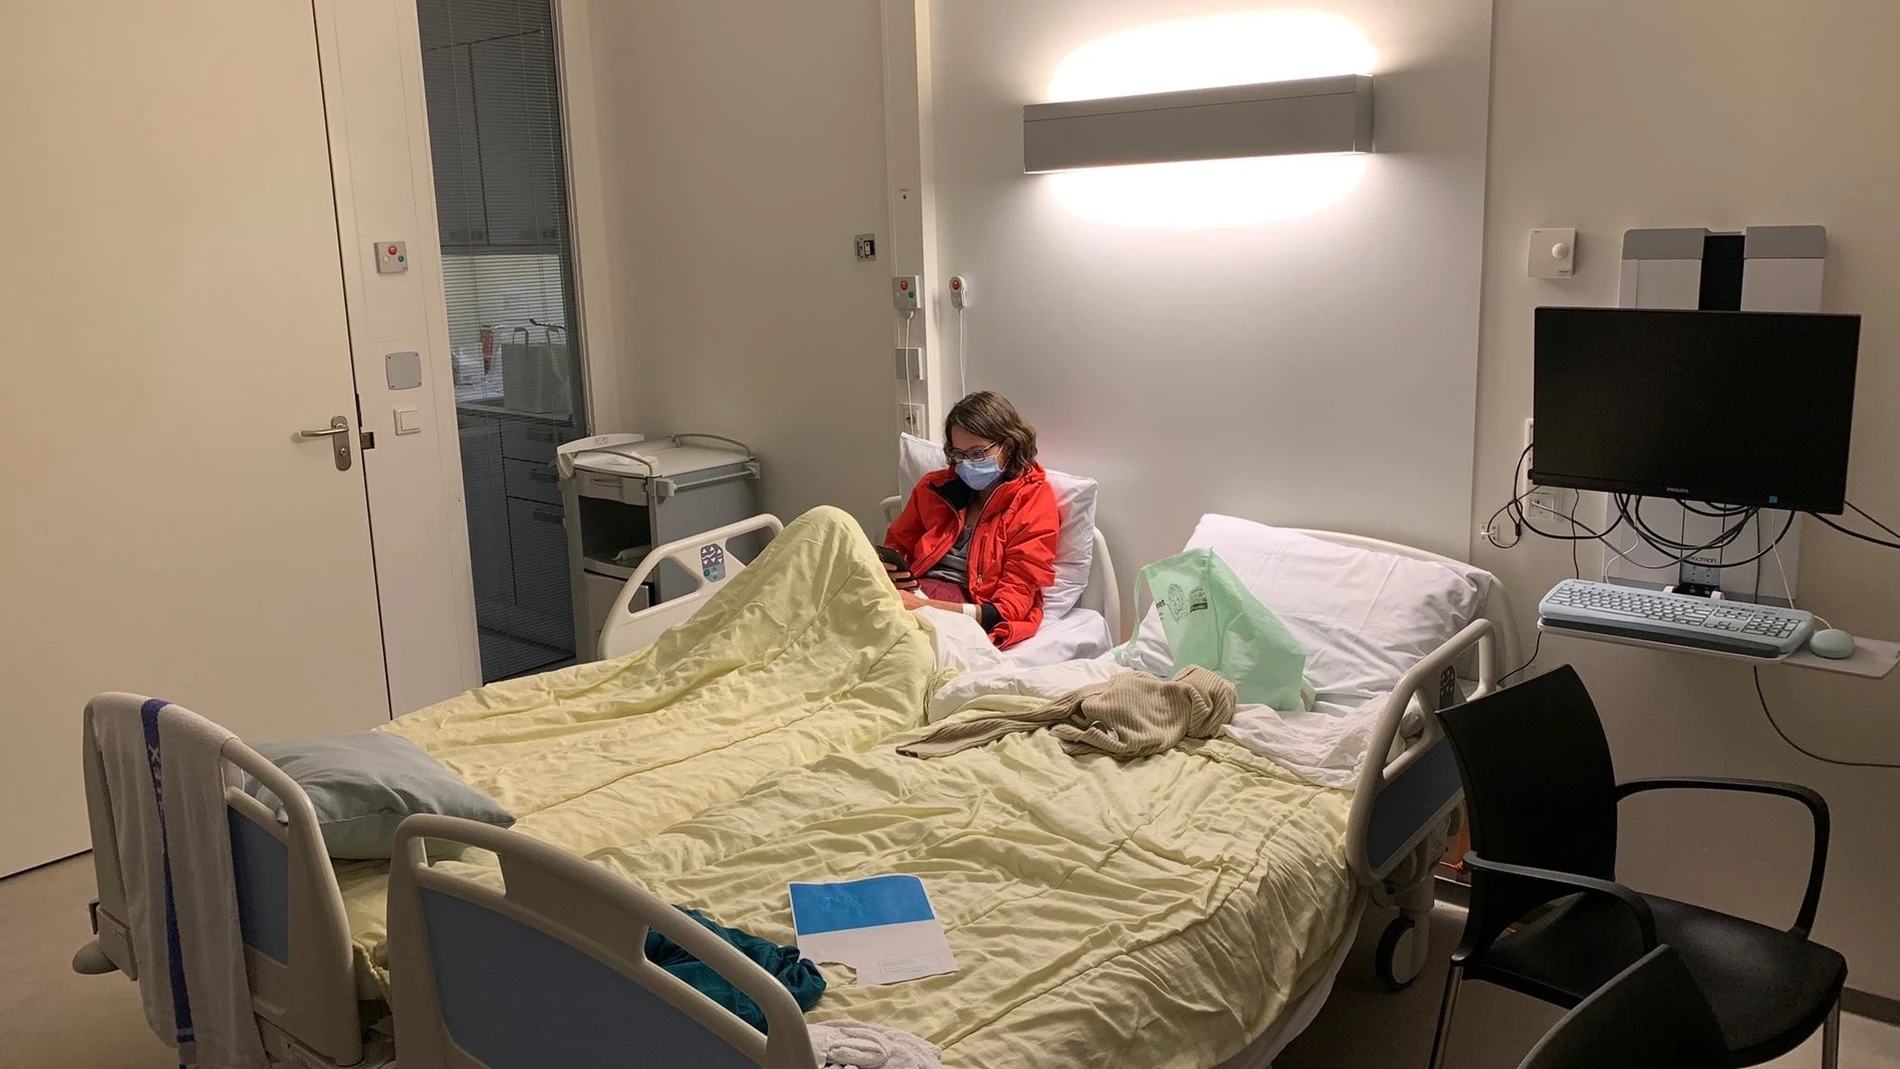 Carola Pimenta, en la imagen, portuguesa de 28 años, en la habitación de un hospital del norte de Países Bajos